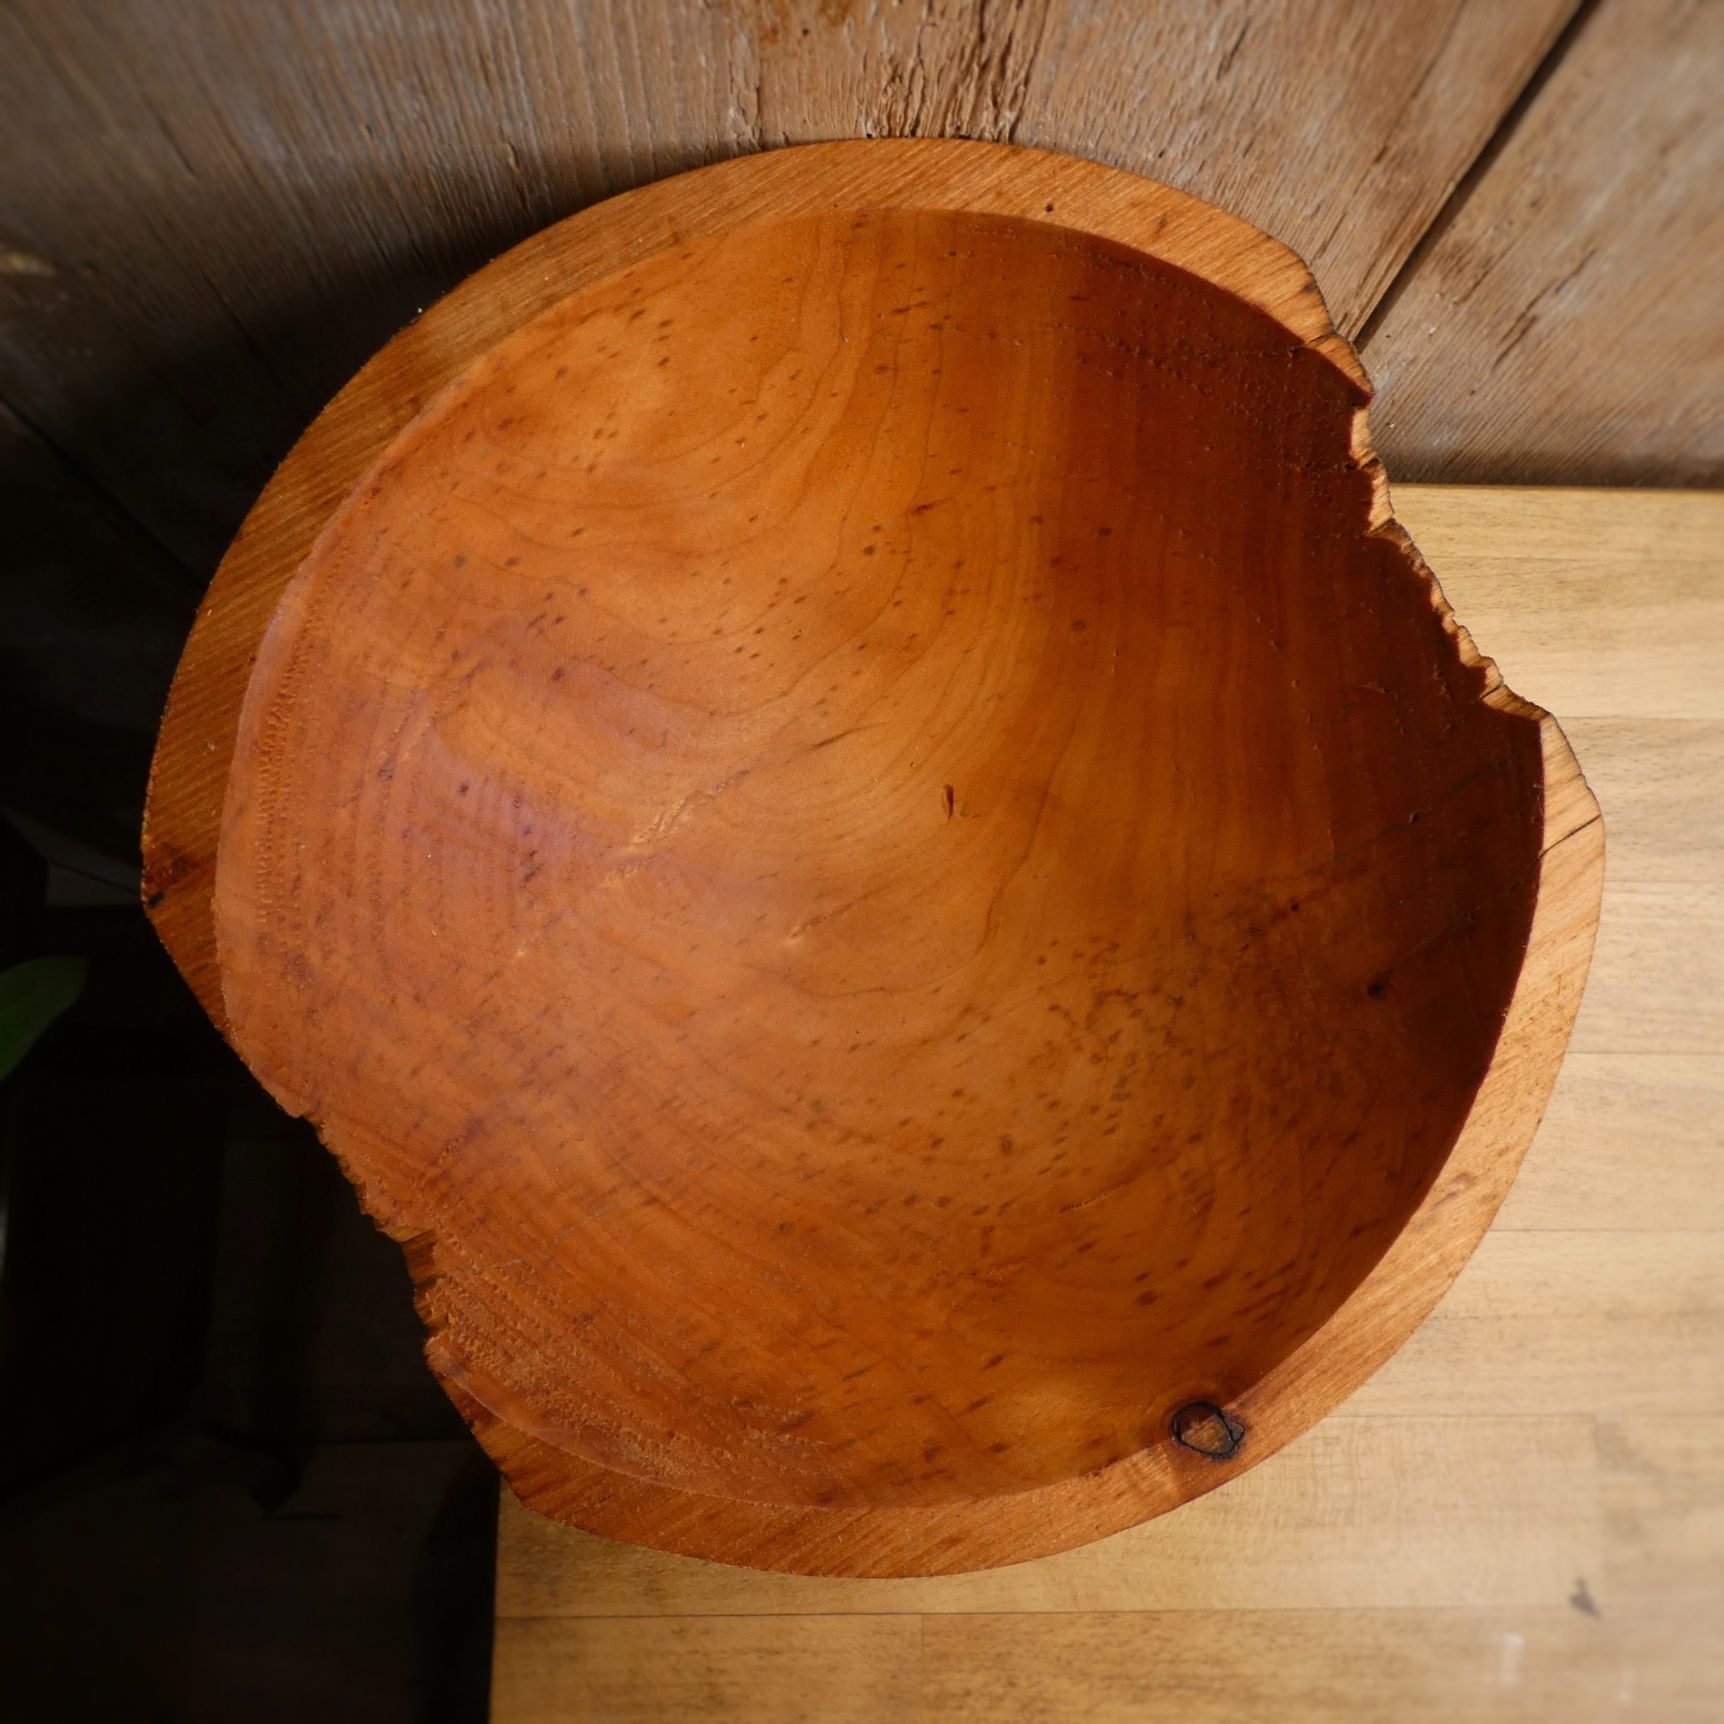 Miska misa drewniana wierzba handmade wooden bowl boho rękodzieło etno